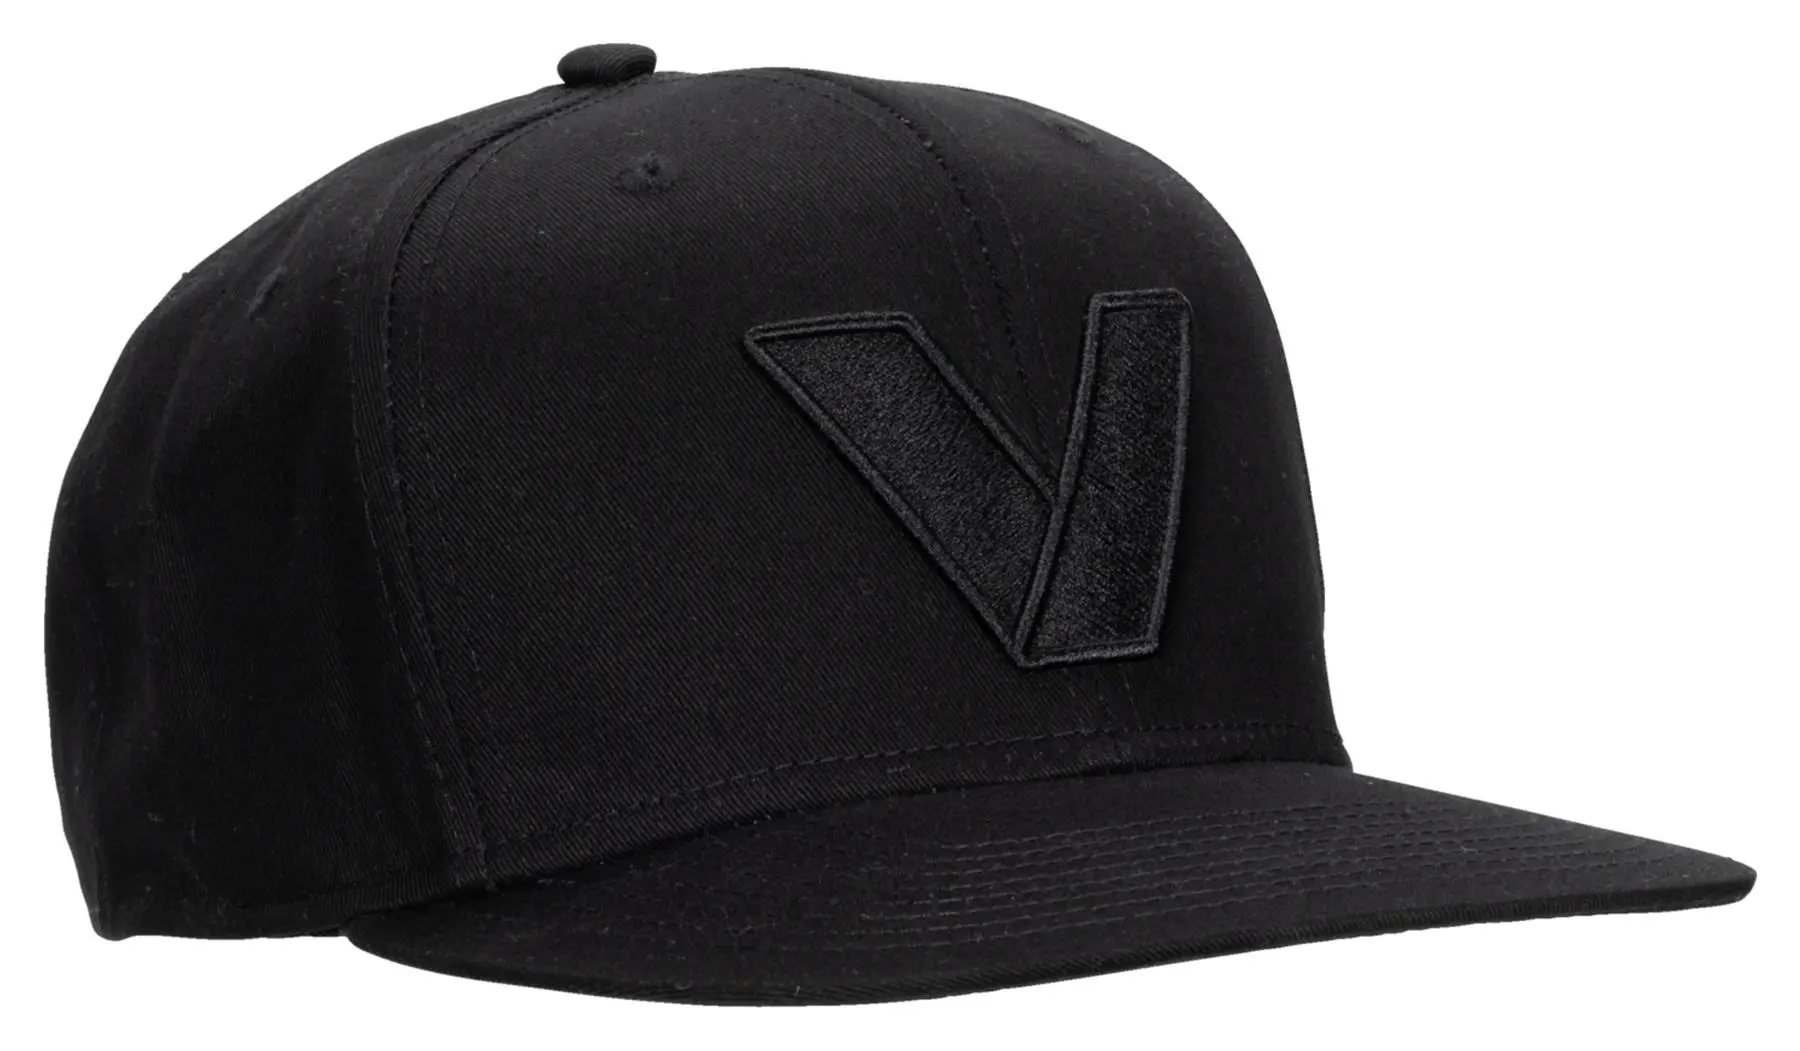 VANUCCI VXM-4 CAP ZWART